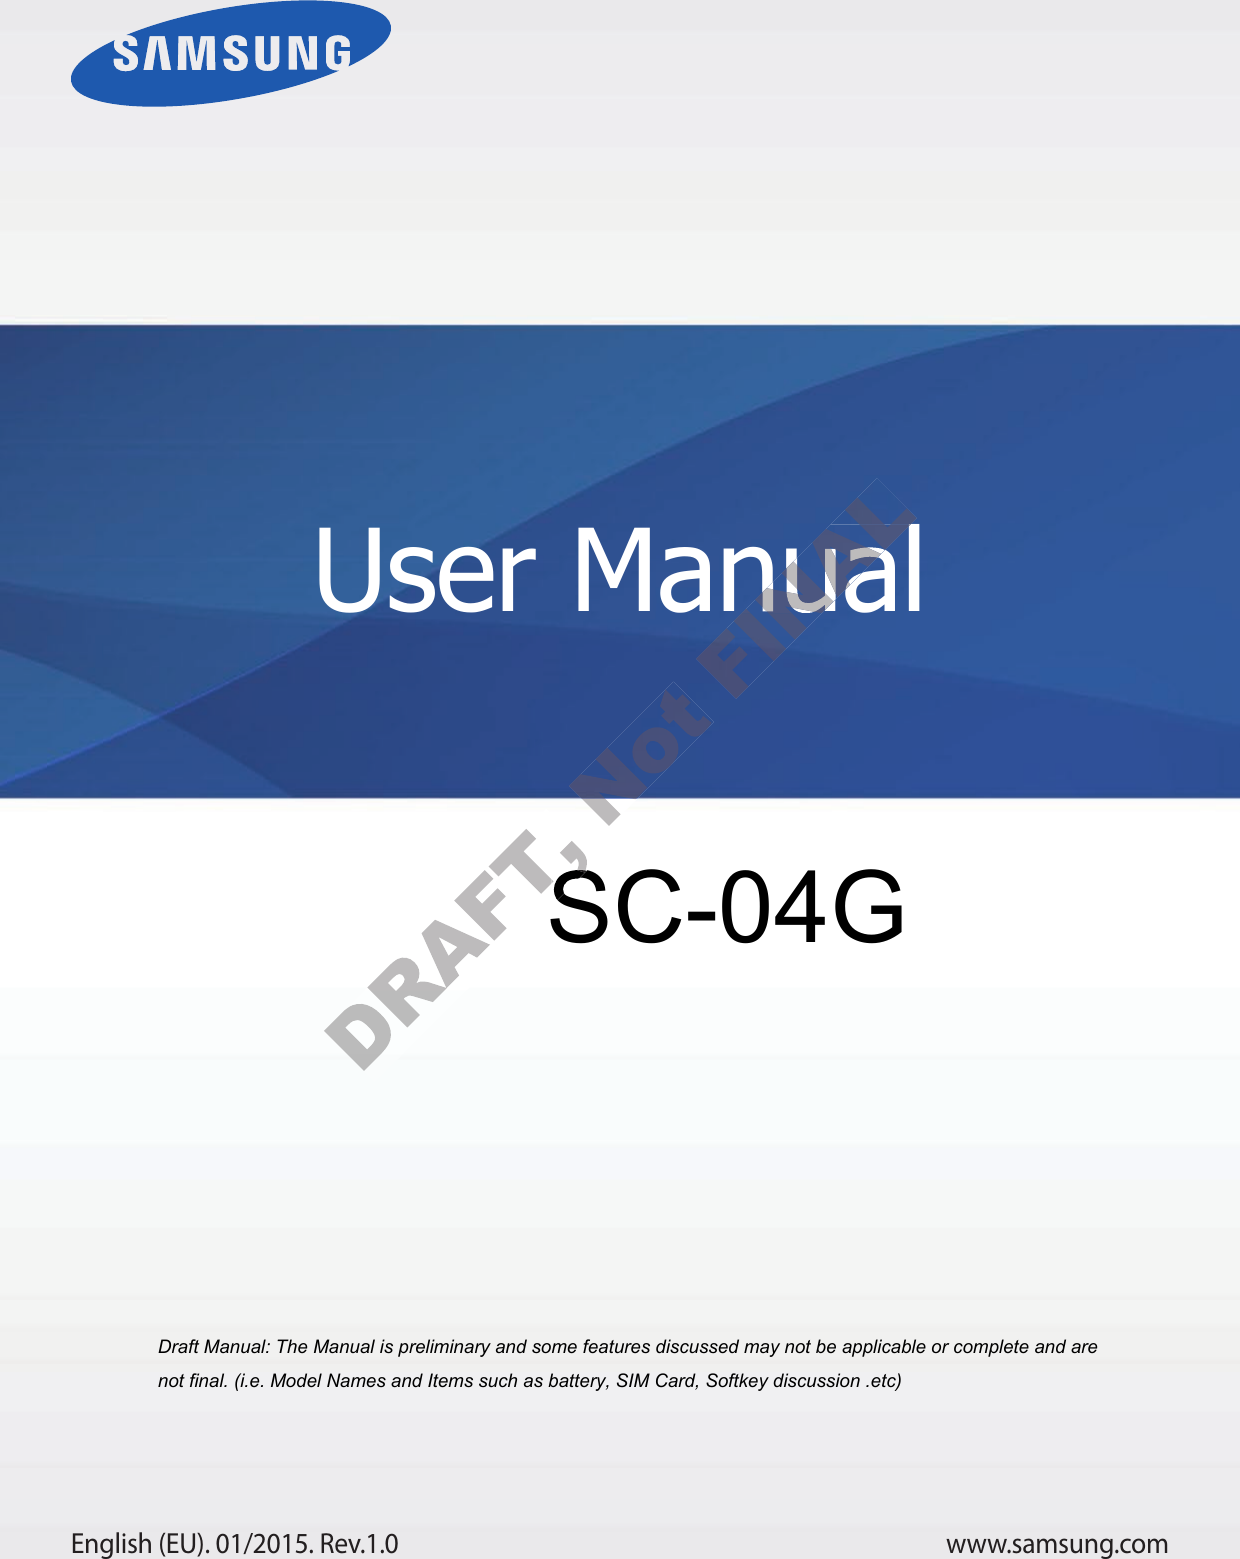 www.samsung.comUser ManualEnglish (EU). 01/2015. Rev.1.0a ana  ana  na and  a dd a n  aa   and a n na  d a and   a a  ad  dn SC-04G User ManualUser Manual